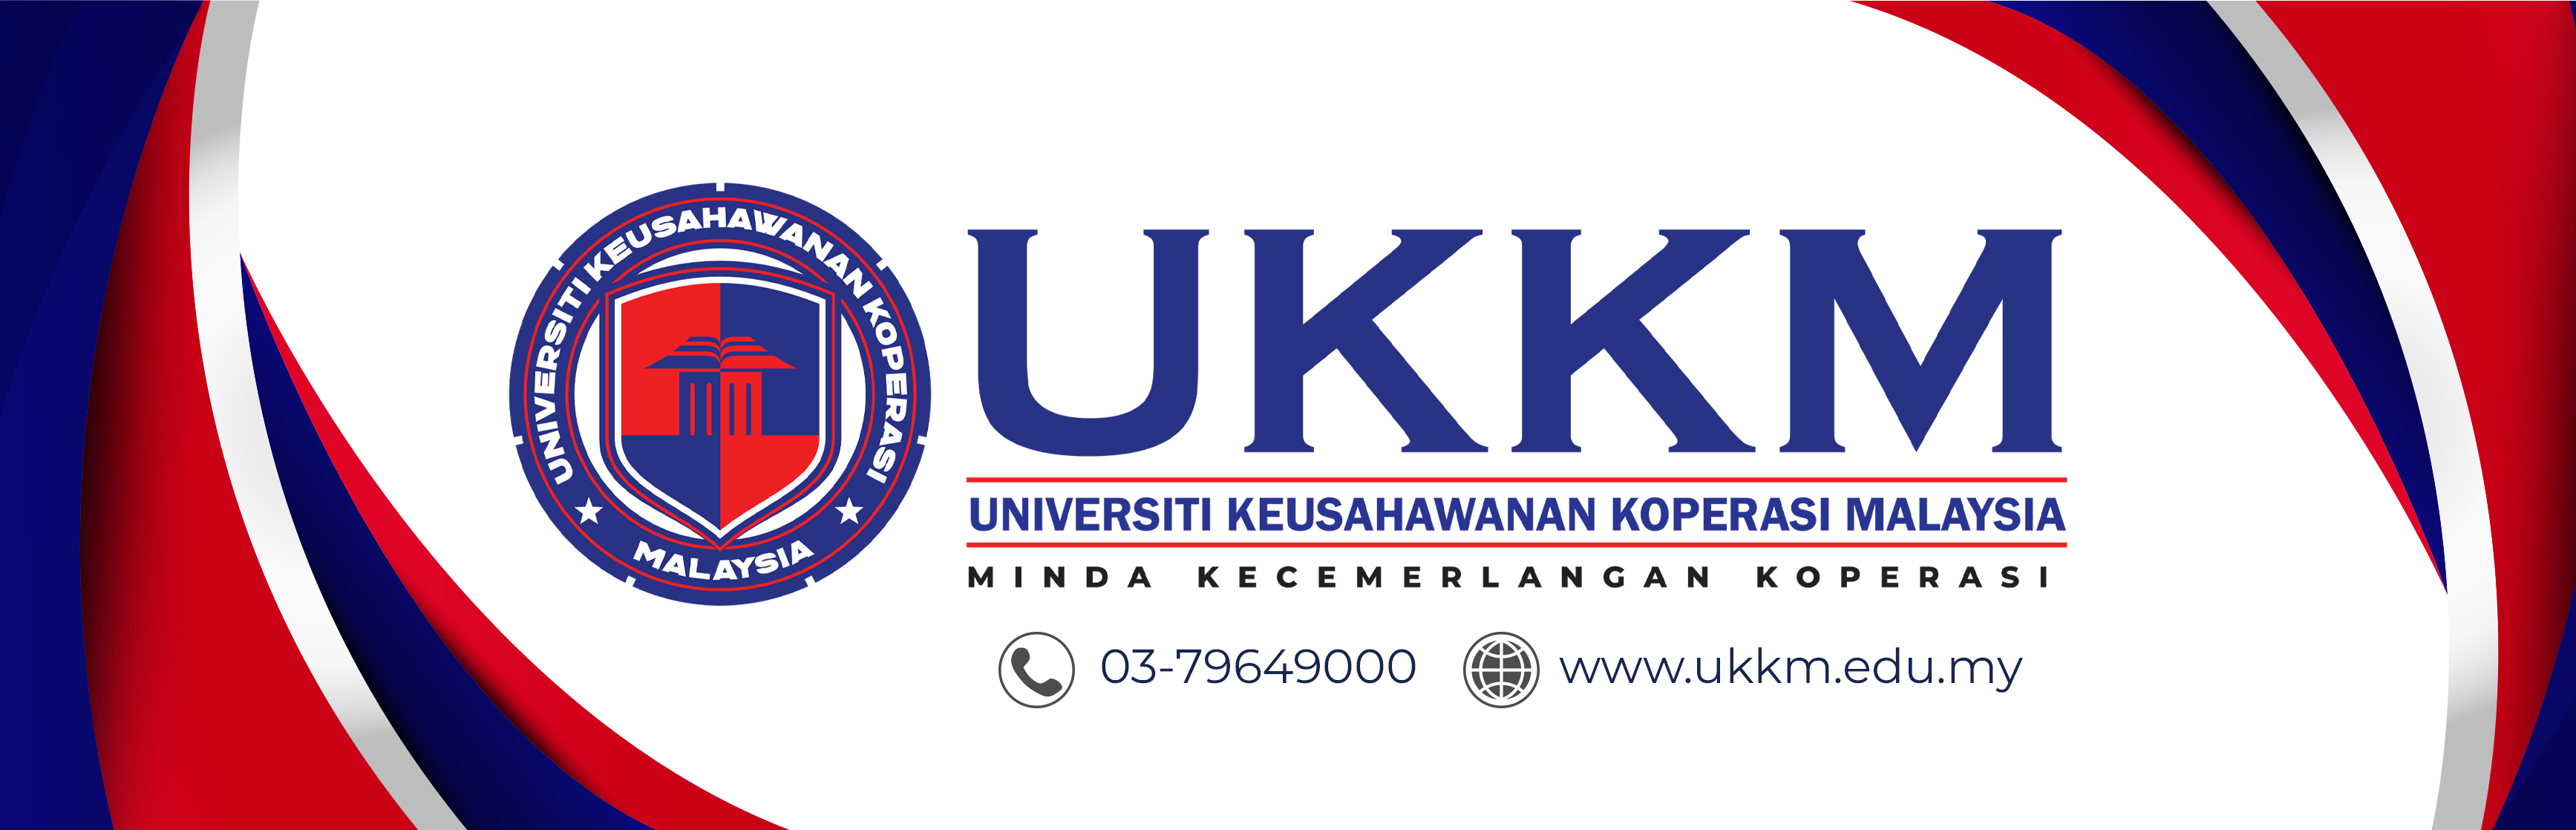 banner-ukkm